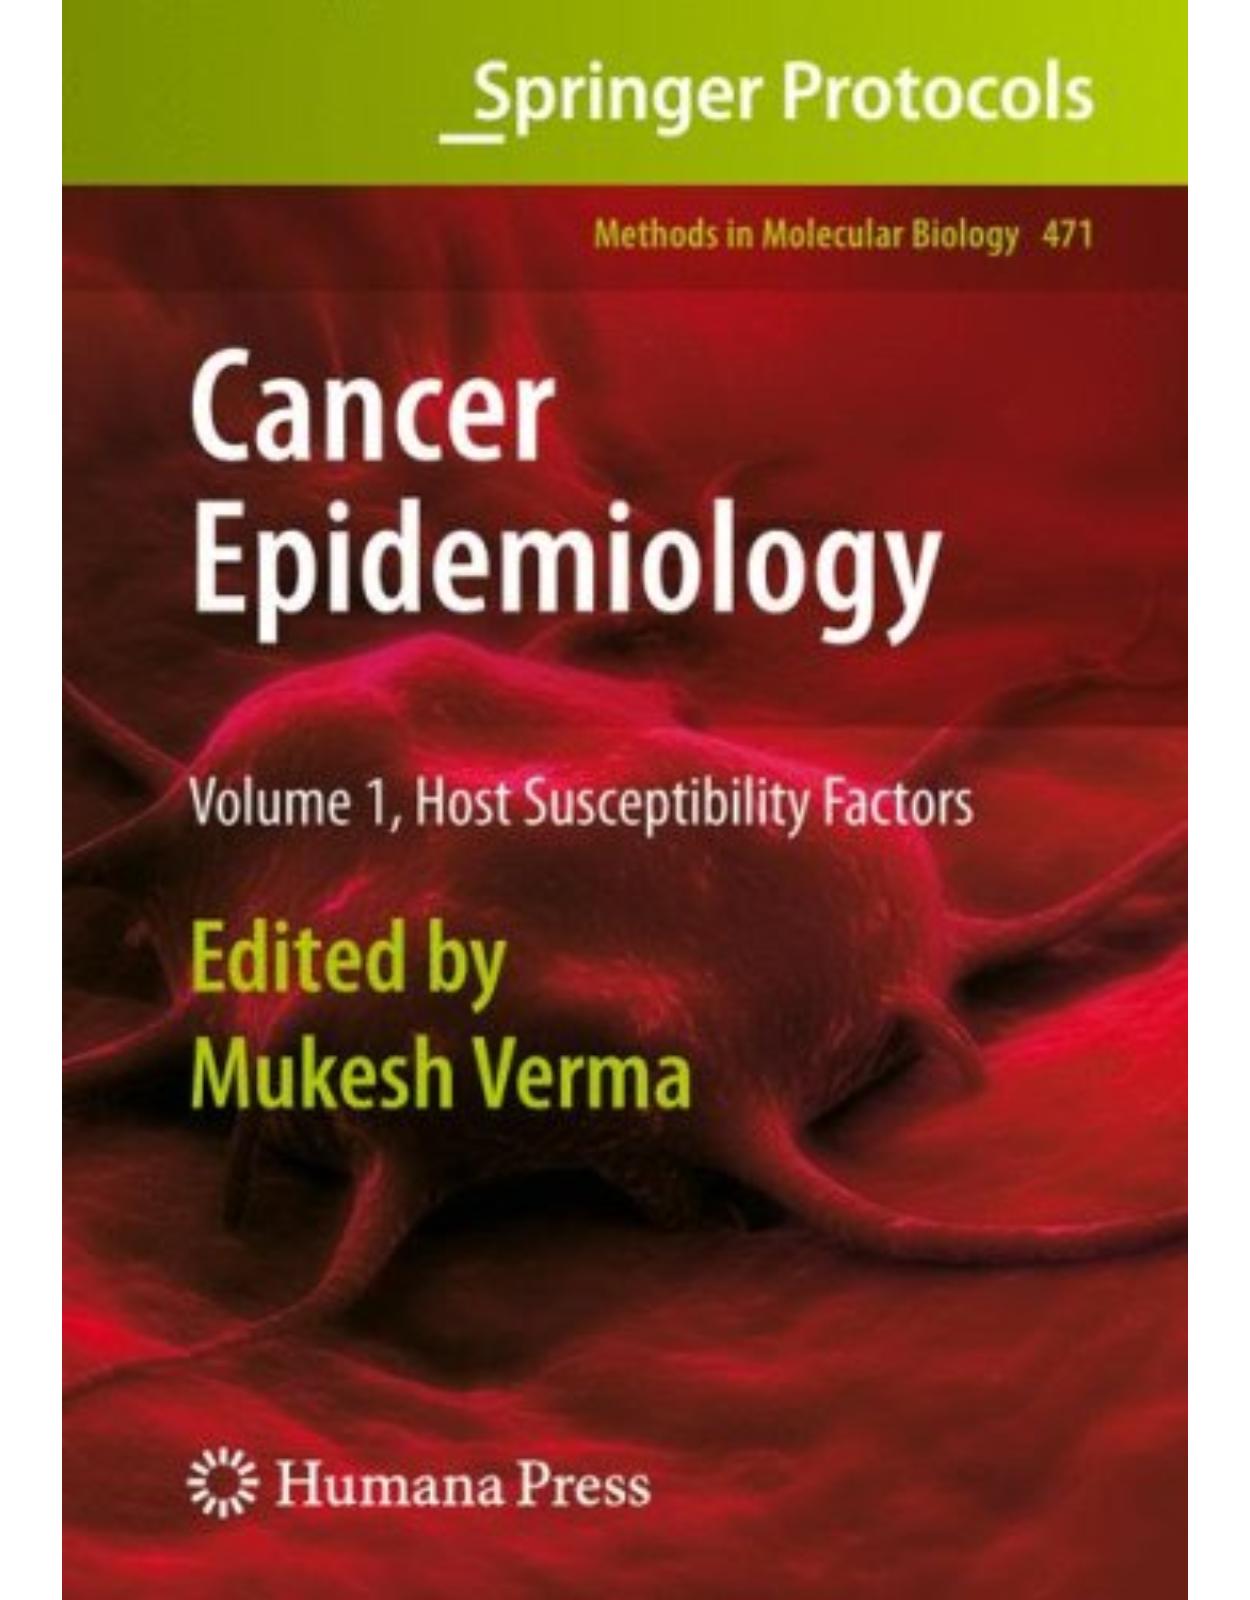 Cancer Epidemiology: Volume 1, Host Susceptibility Factors (Methods in Molecular Biology) (v. 1)